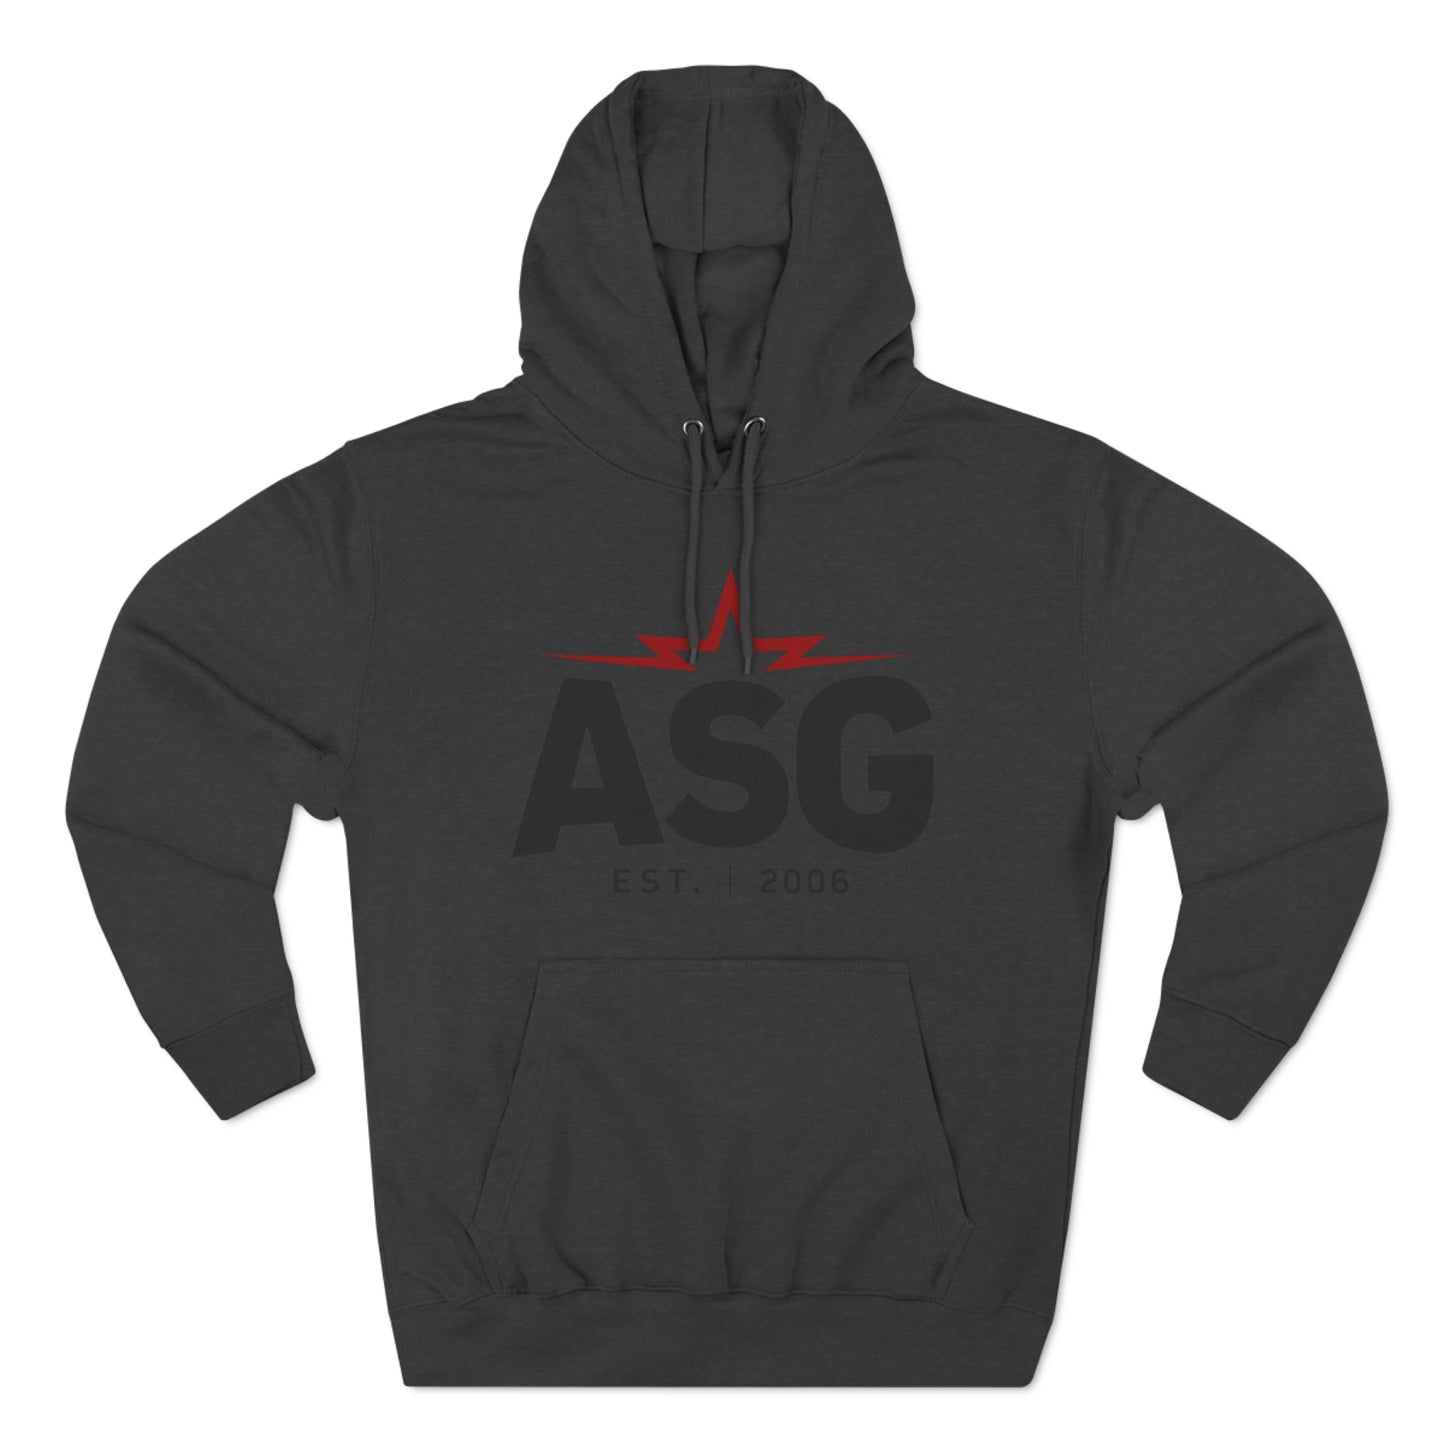 ASG Unisex Premium Pullover Hoodie